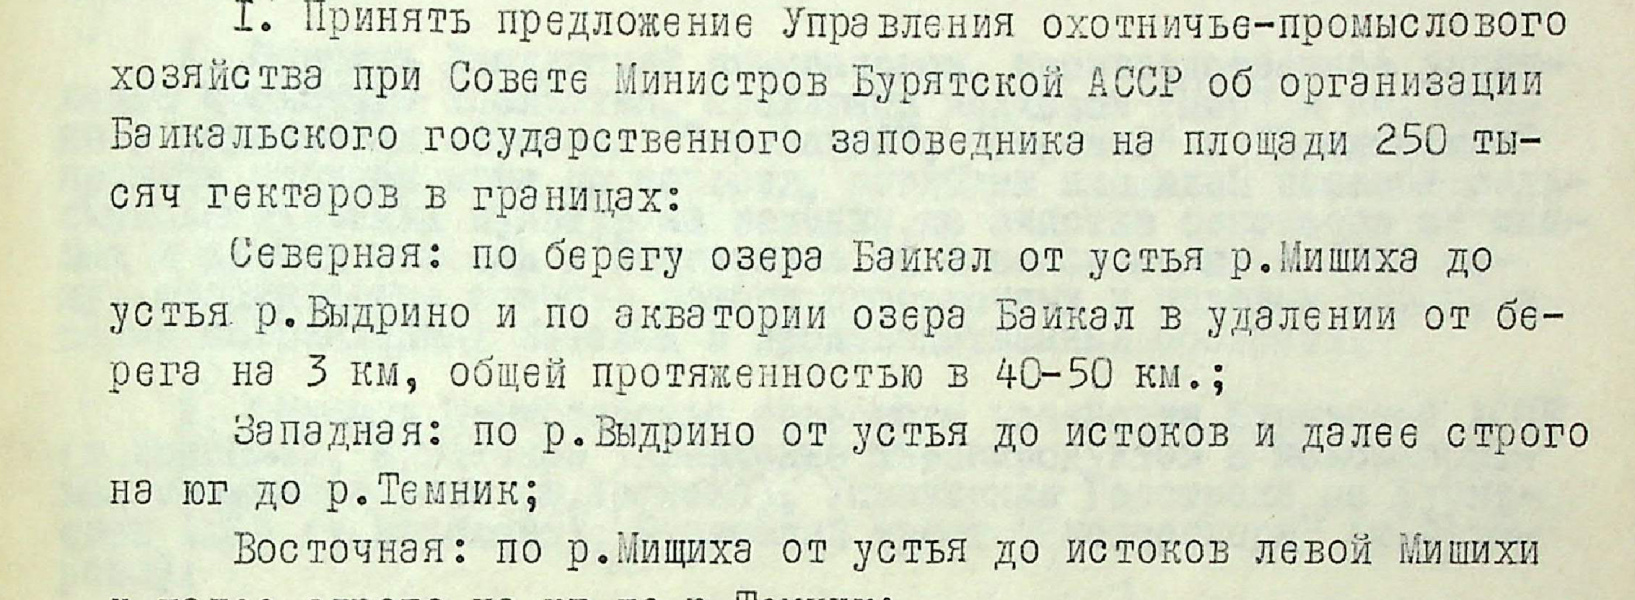 5 июля 1968 г. 55 лет со дня организации на территории Бурятской АССР Байкальского государственного заповедника